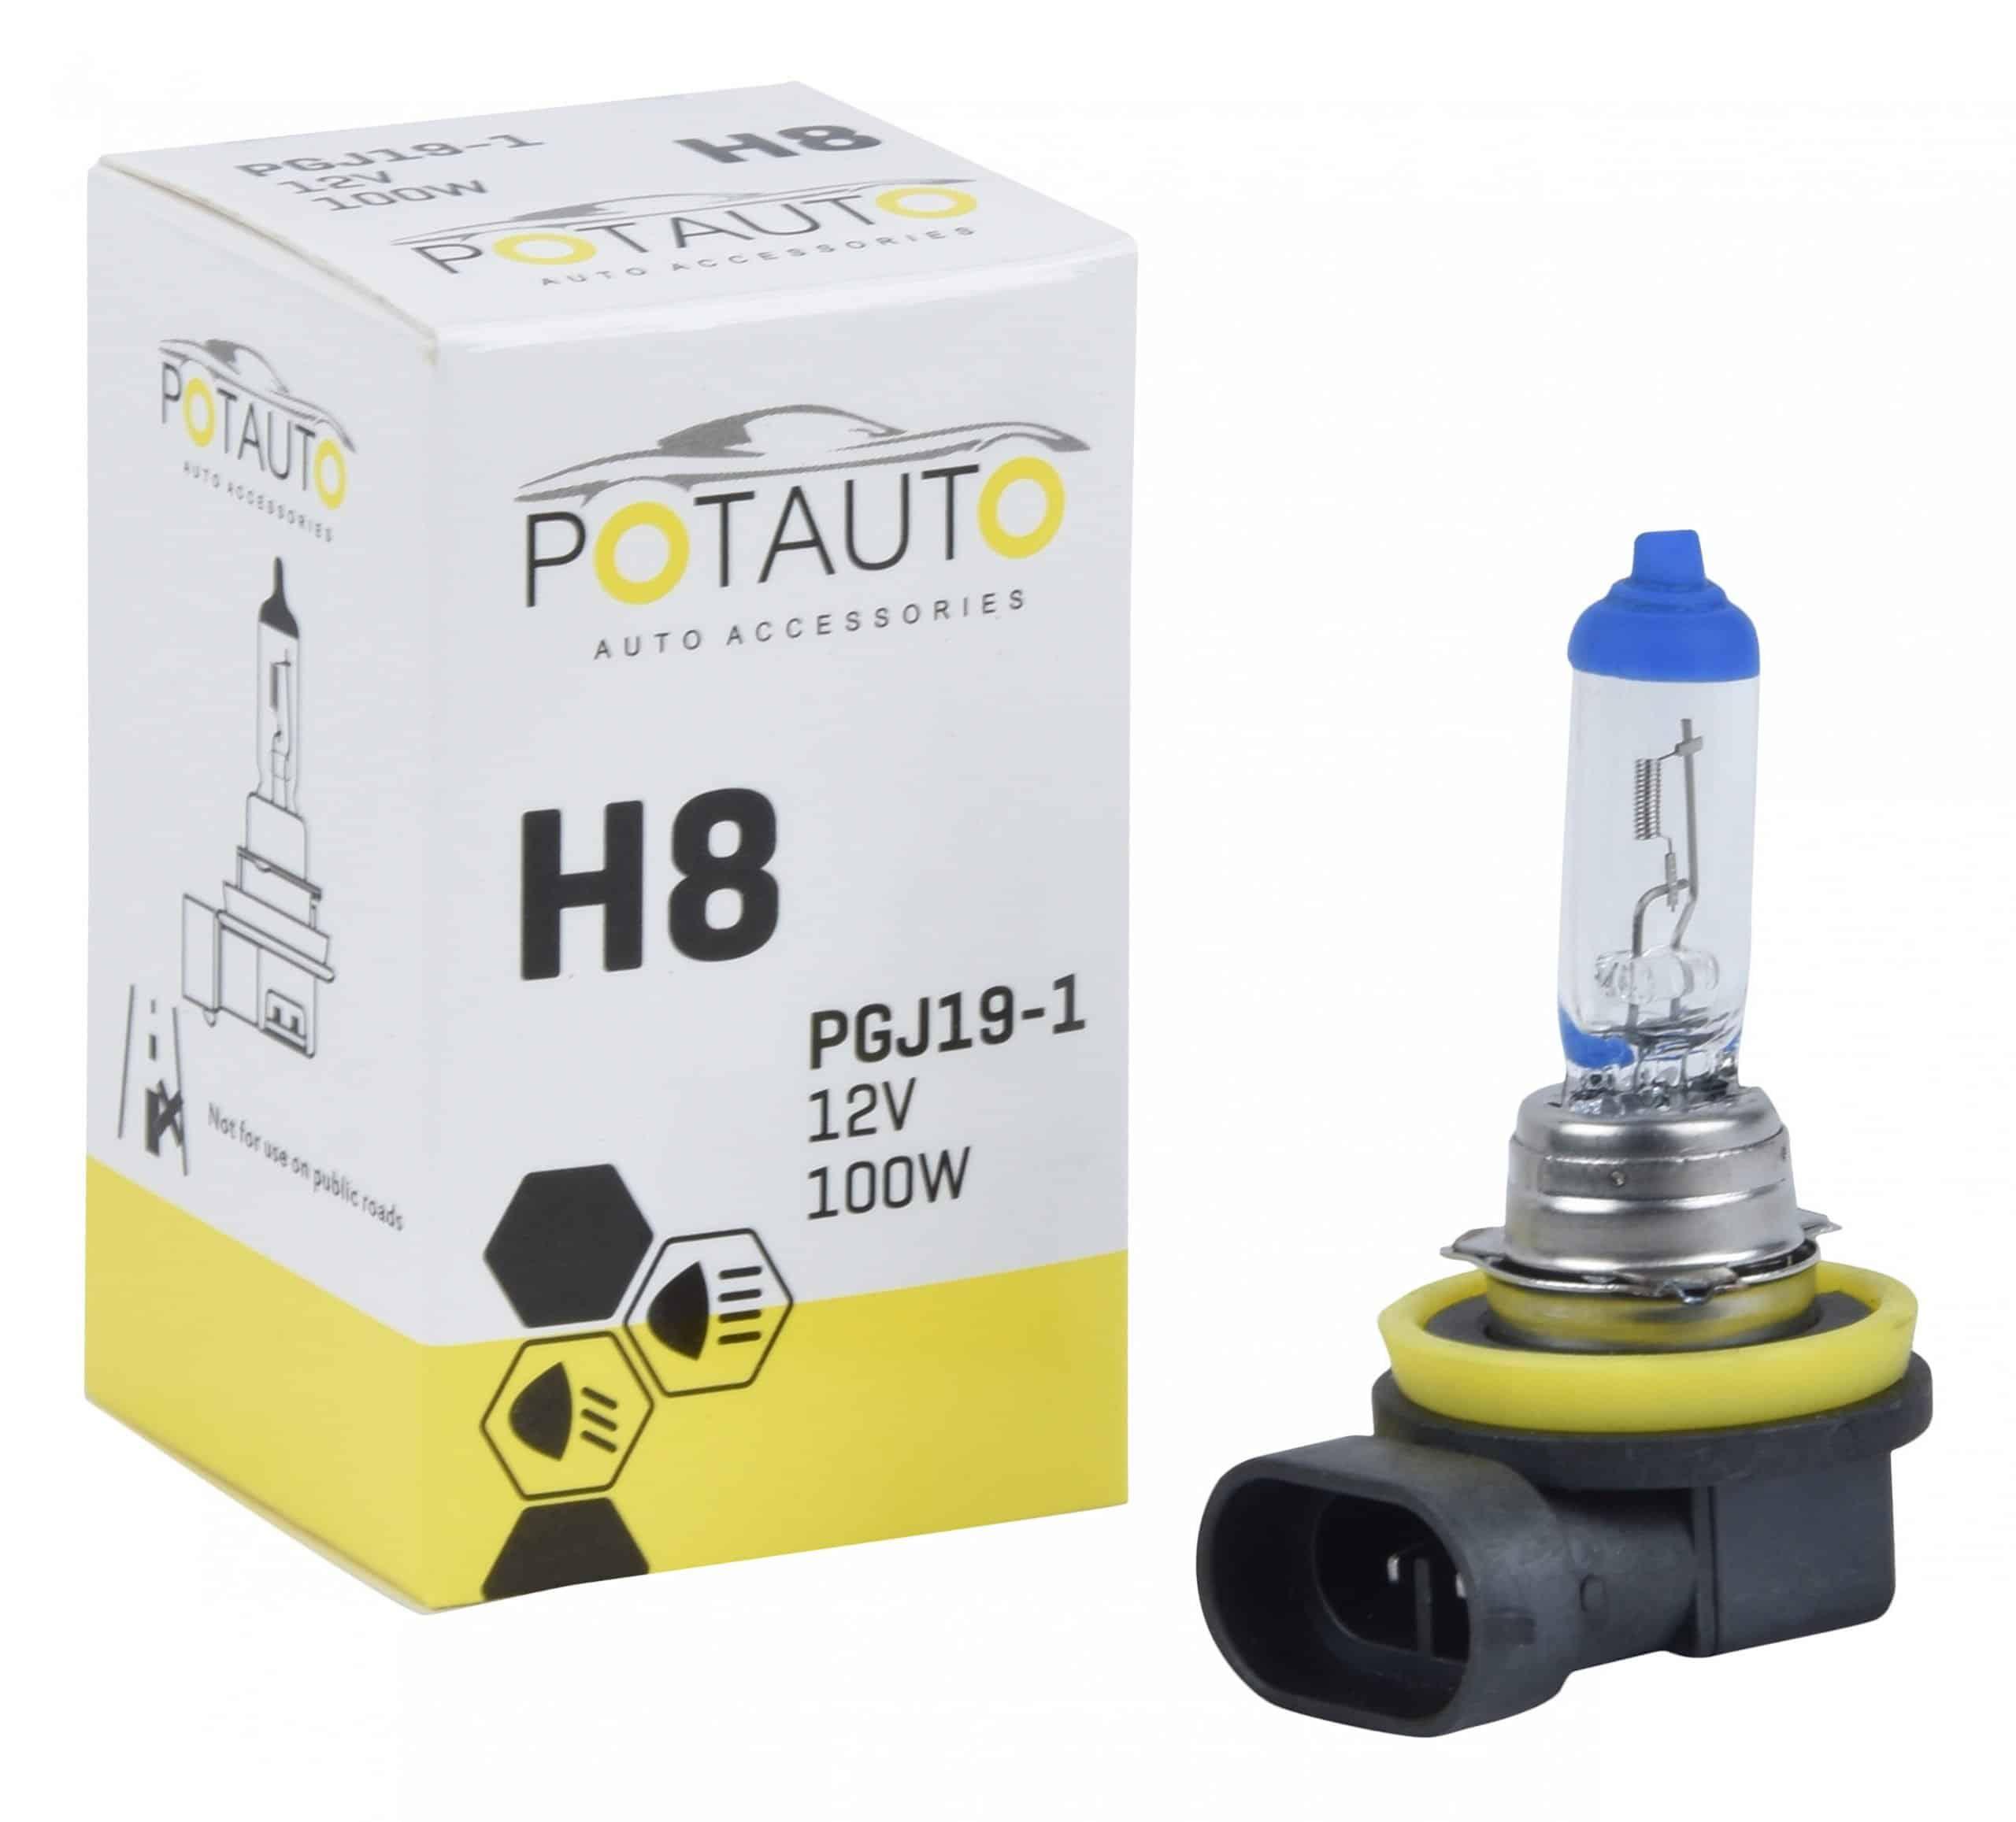 Potauto H8 Headlight Bulb for car PGJ19-1 (12V 100W)  (Set of 2)